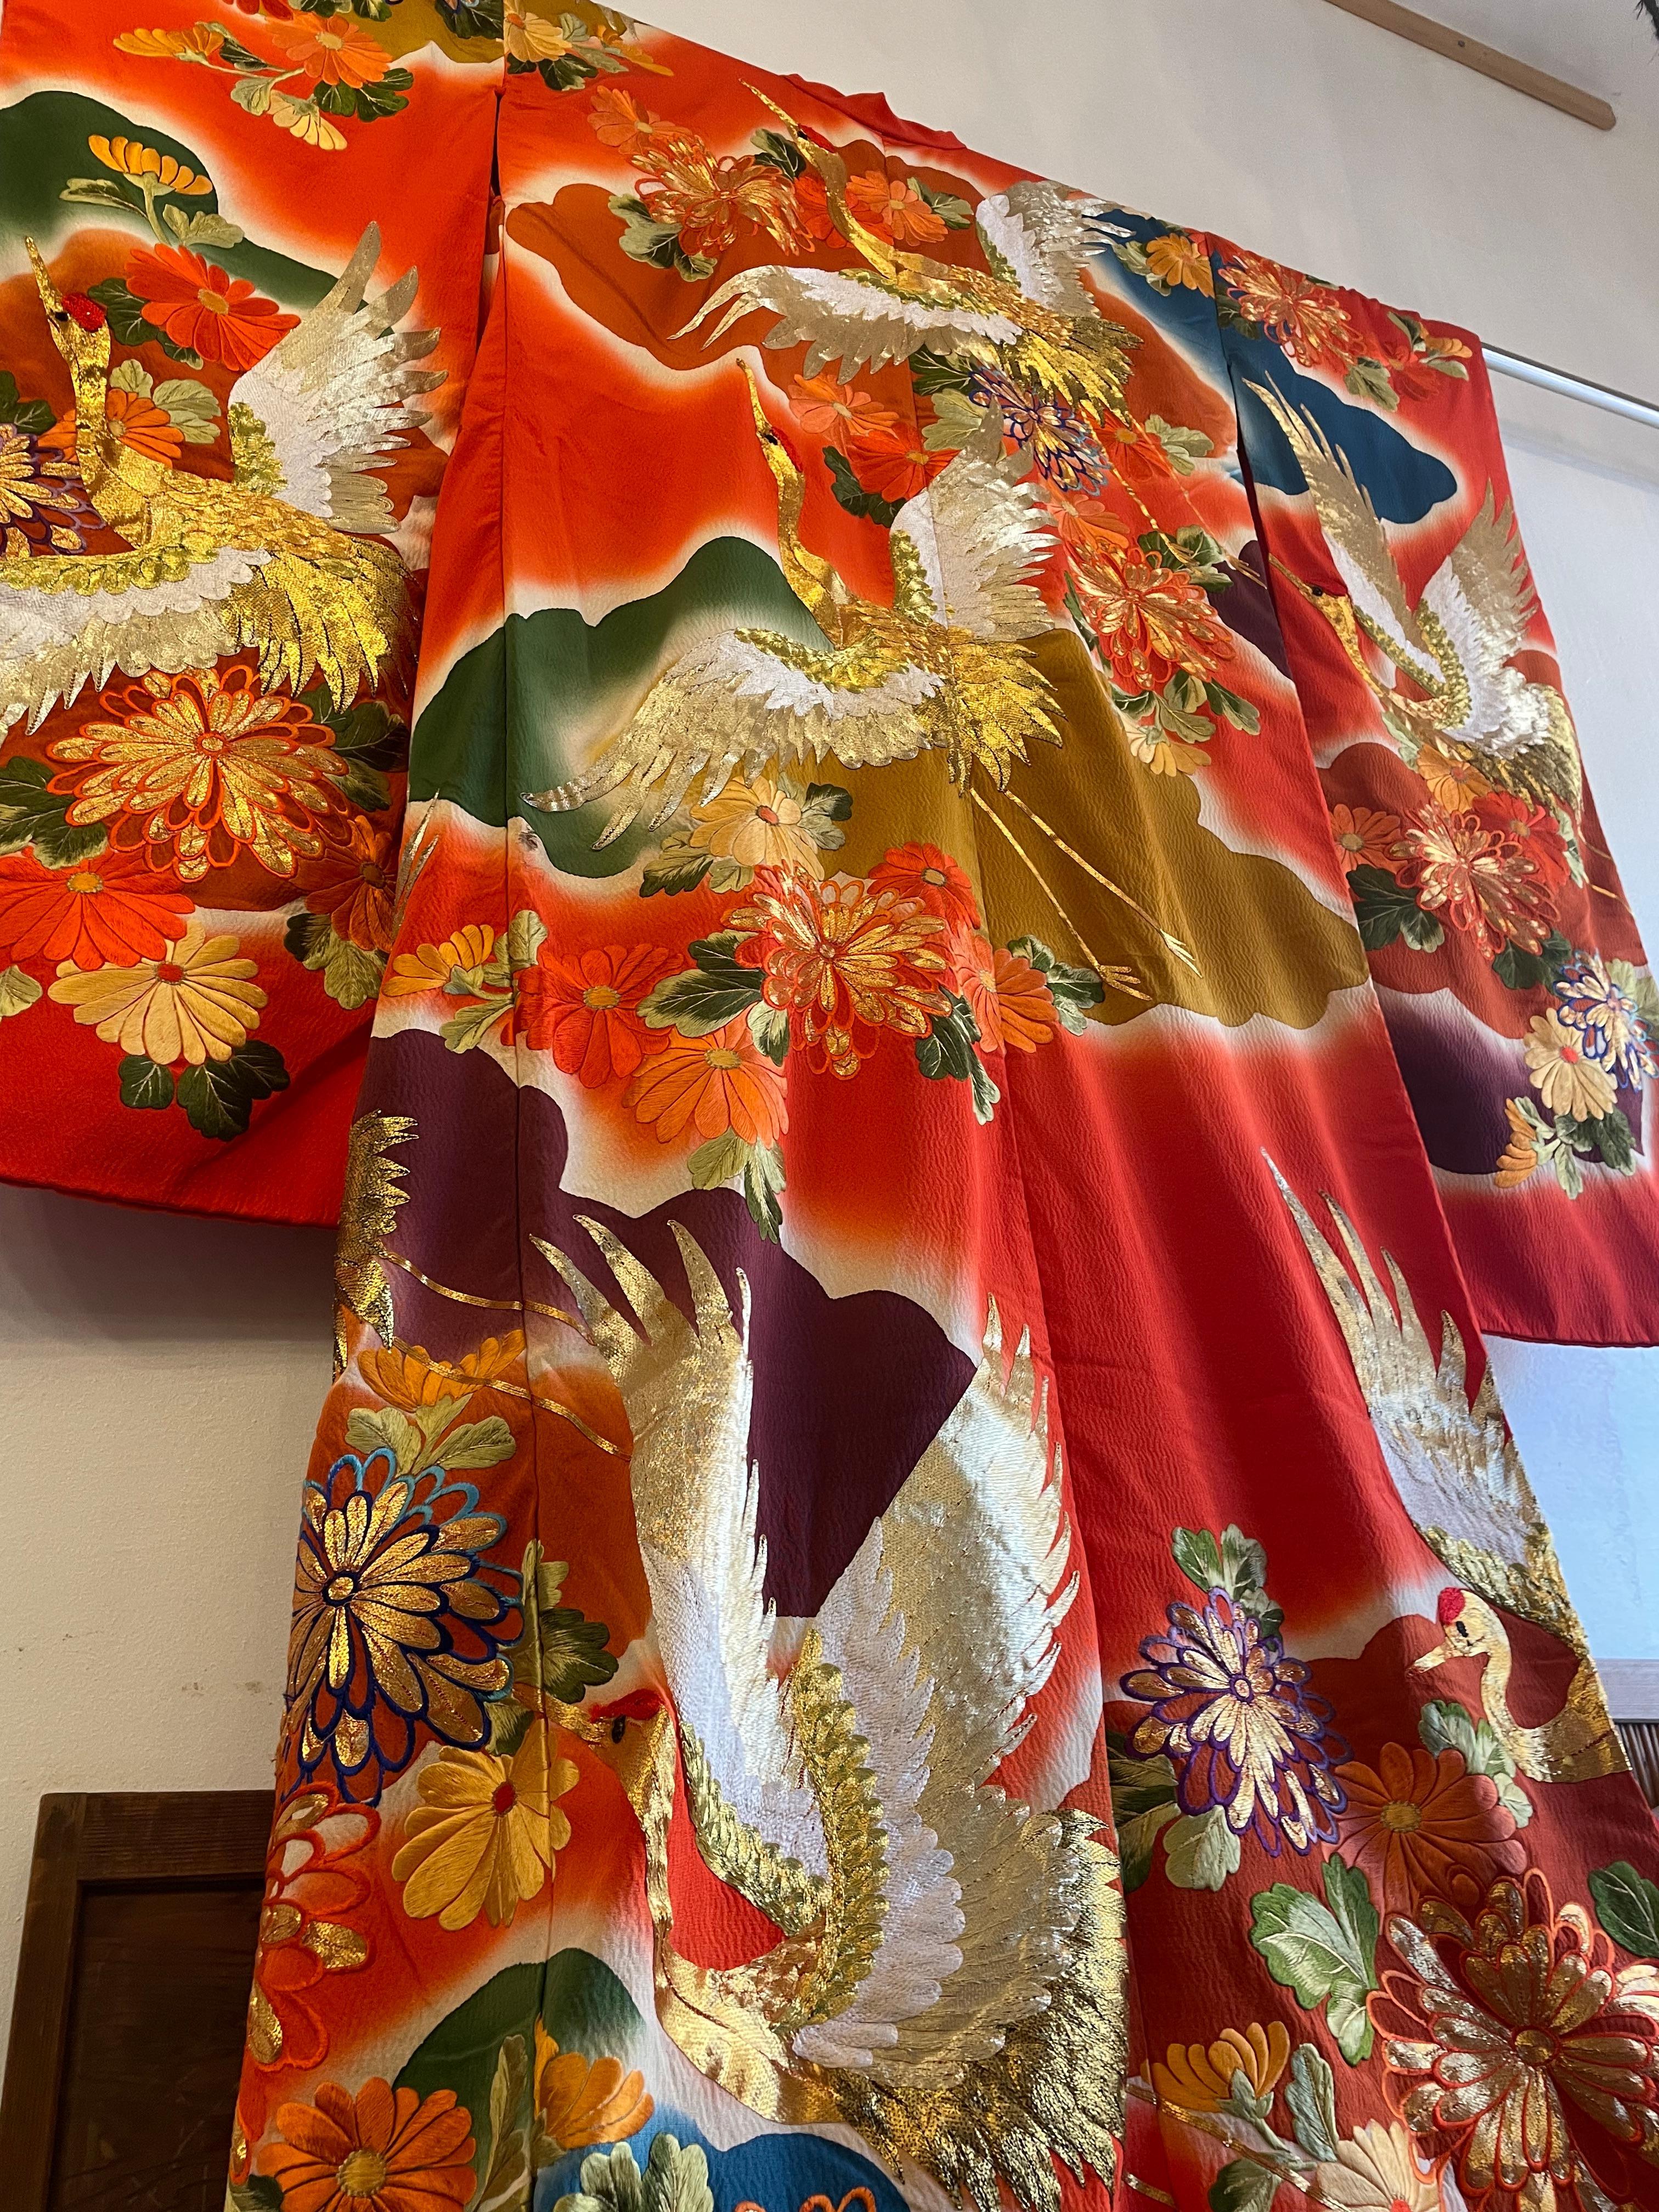 Dies ist ein Kimono namens Uchikake, den japanische Frauen zur Hochzeitszeremonie tragen.
Es wird gesagt, dass die Frauen die weißen uchikake aus dem Grund tragen, dass sie in jeder Farbe gefärbt werden können